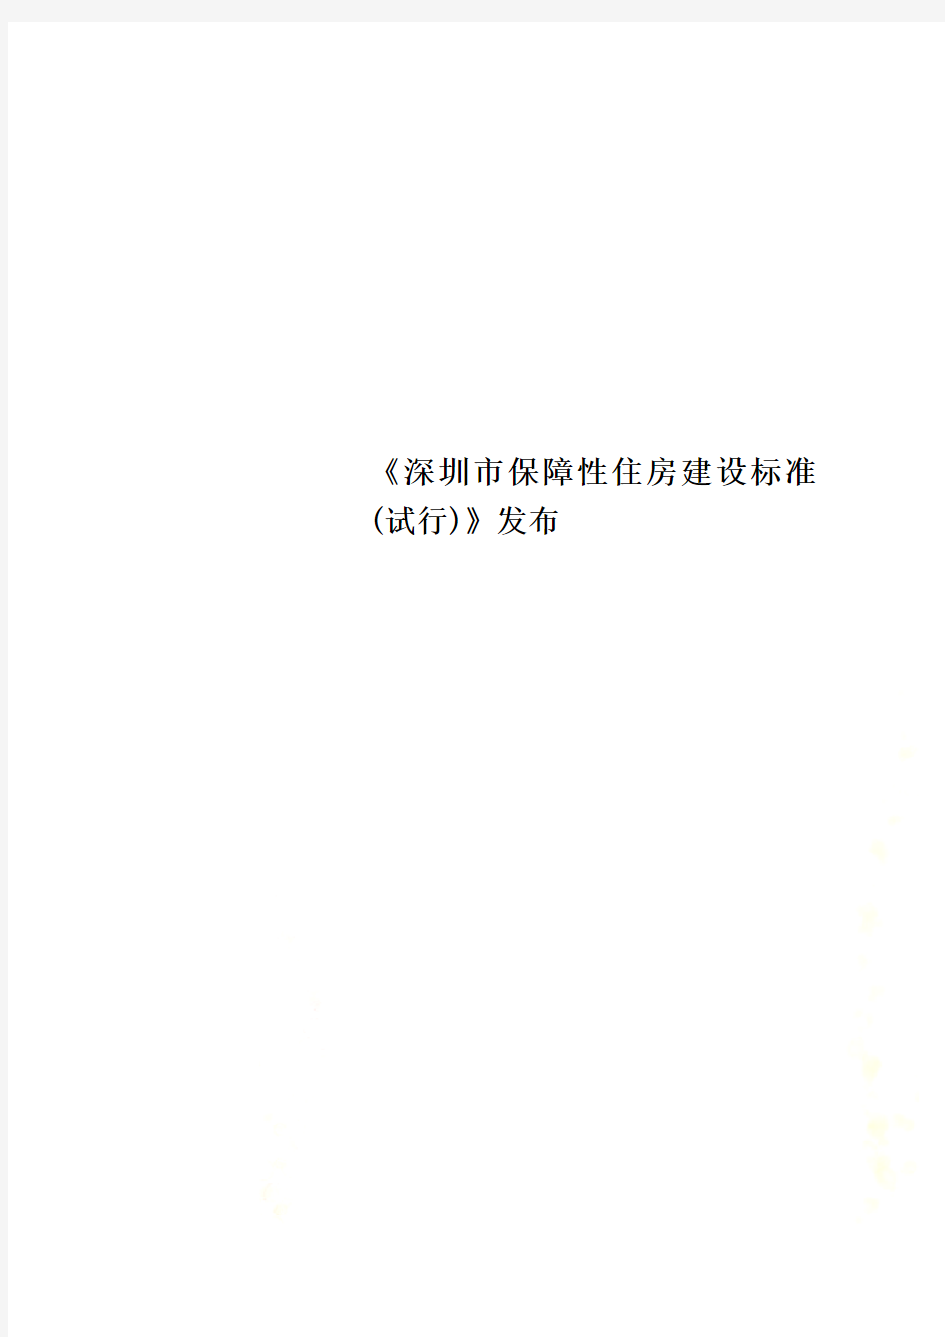 《深圳市保障性住房建设标准(试行)》发布